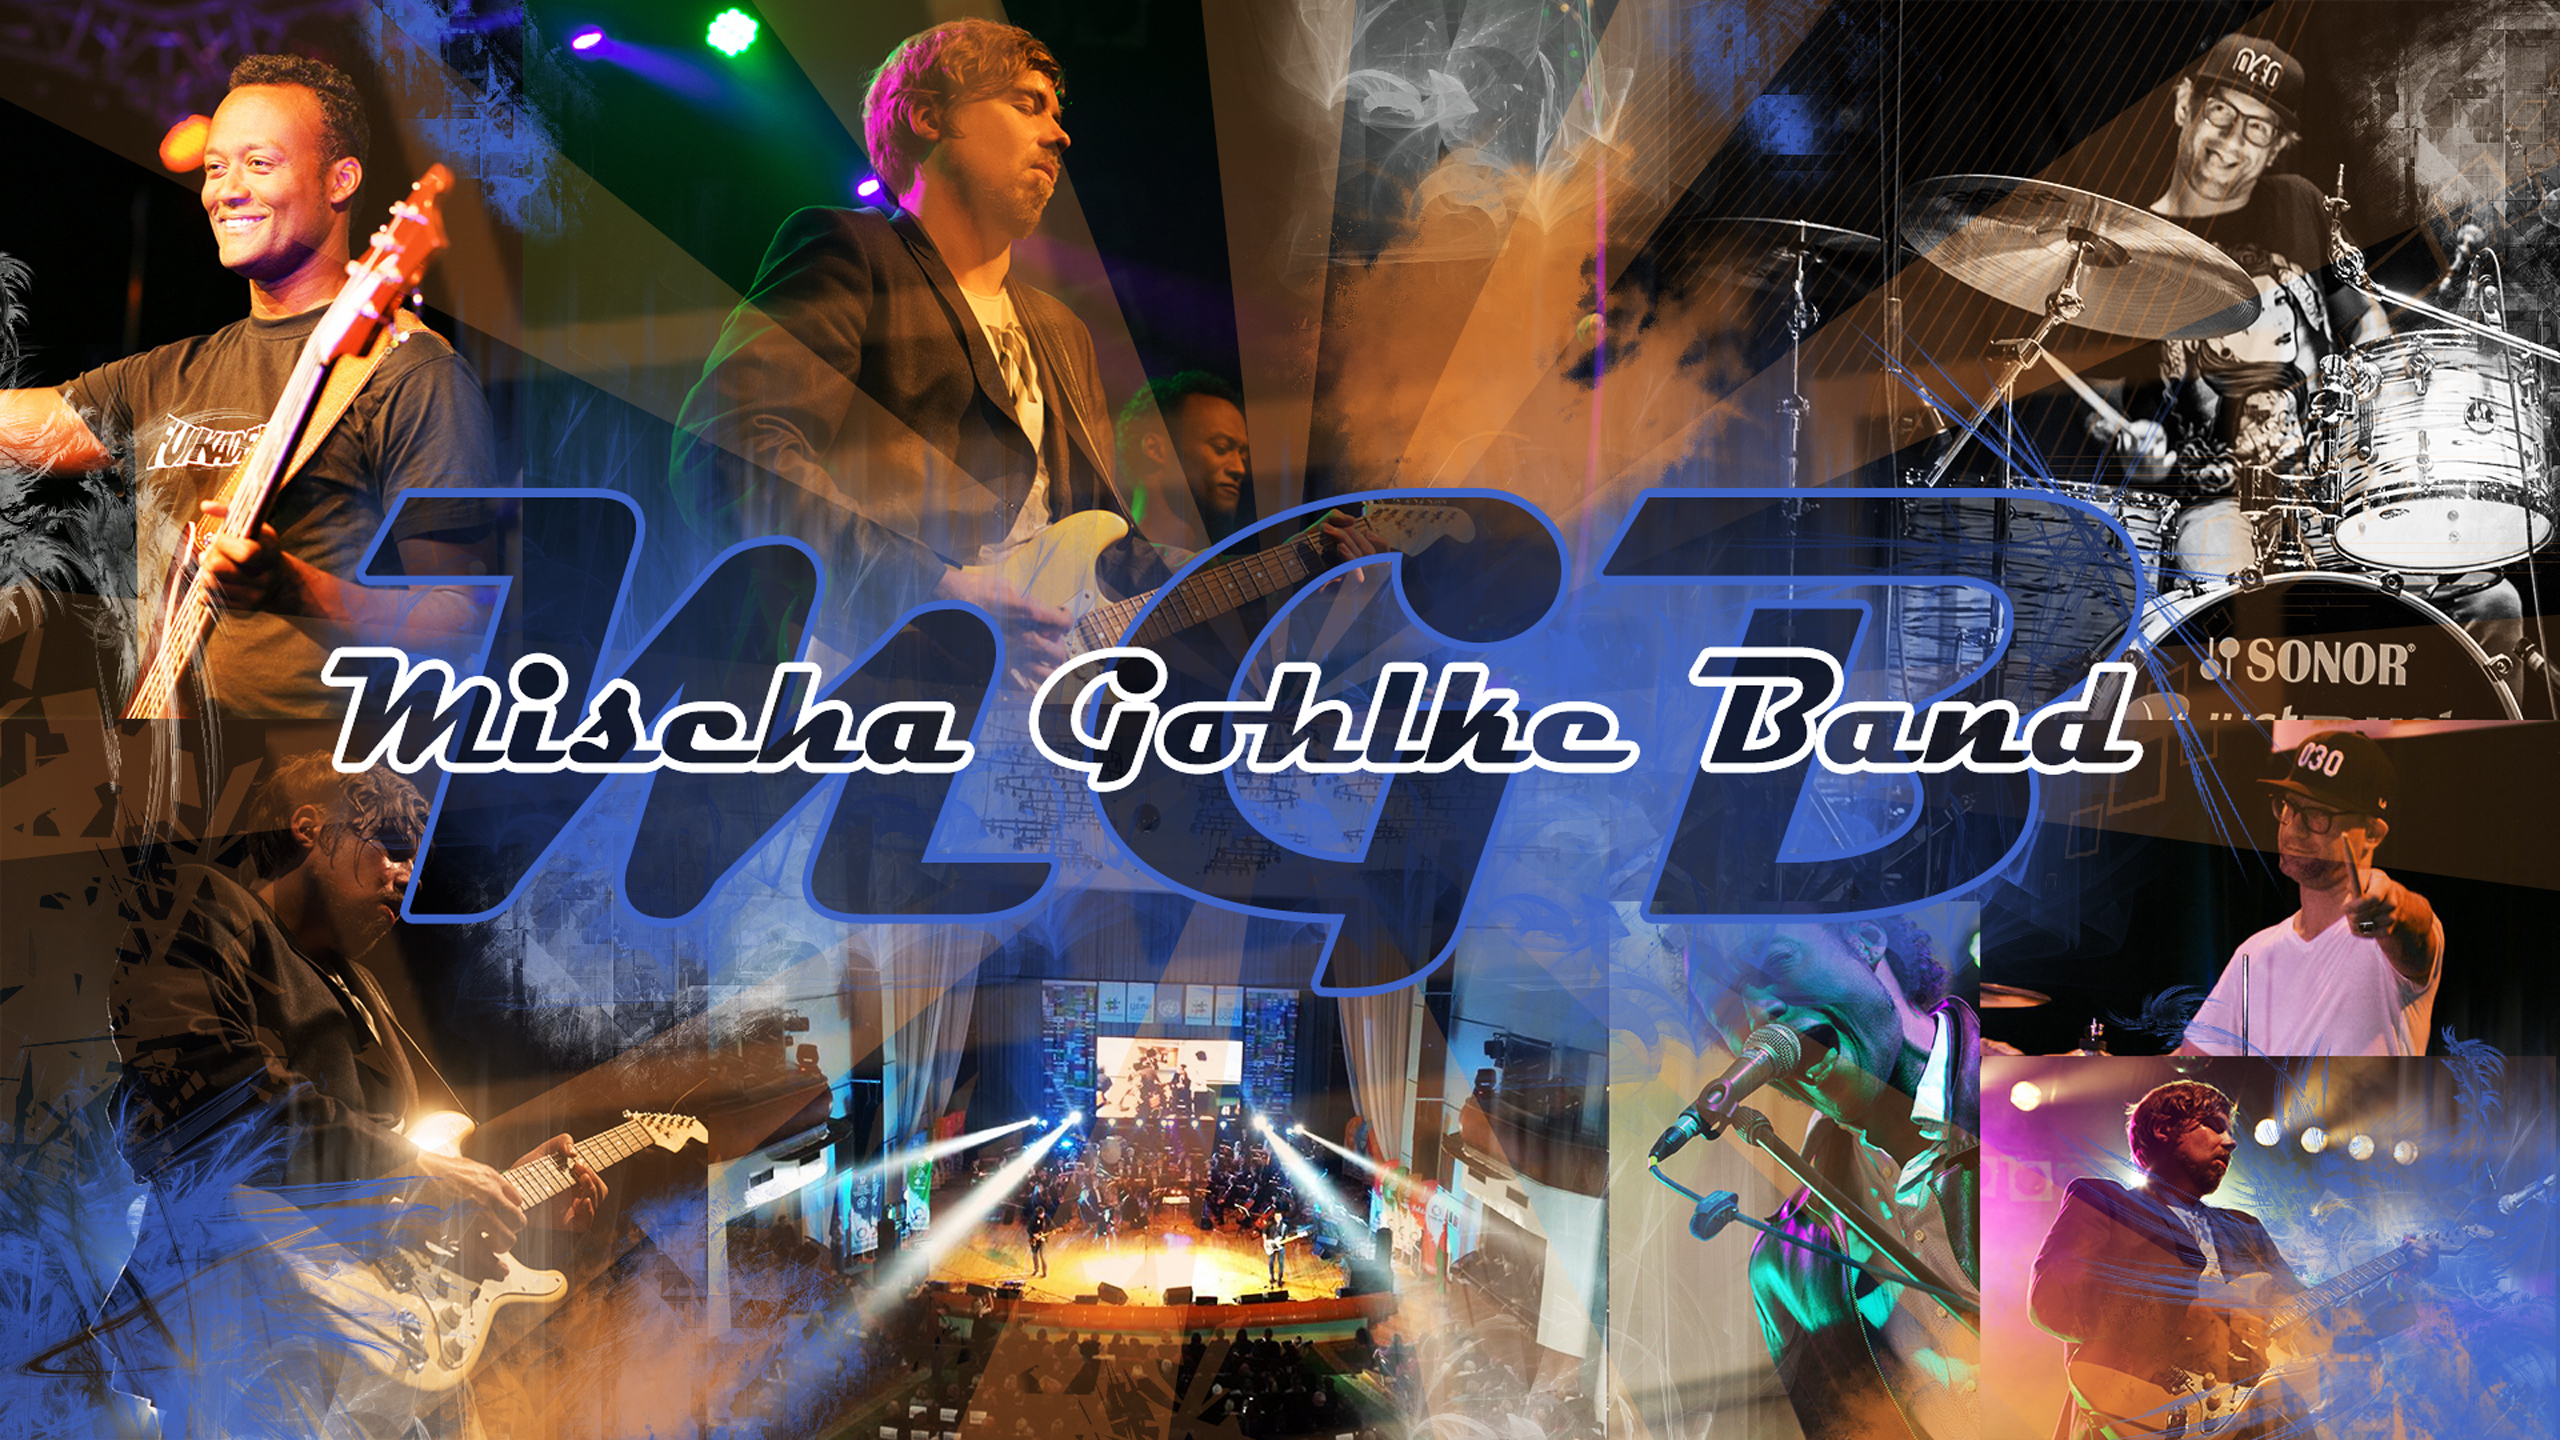 Bildkollage Mischa Gohlke und Band, mit verschiedenen Fotos beim Auftritt und Schriftzug Mischa Gohlke Band.